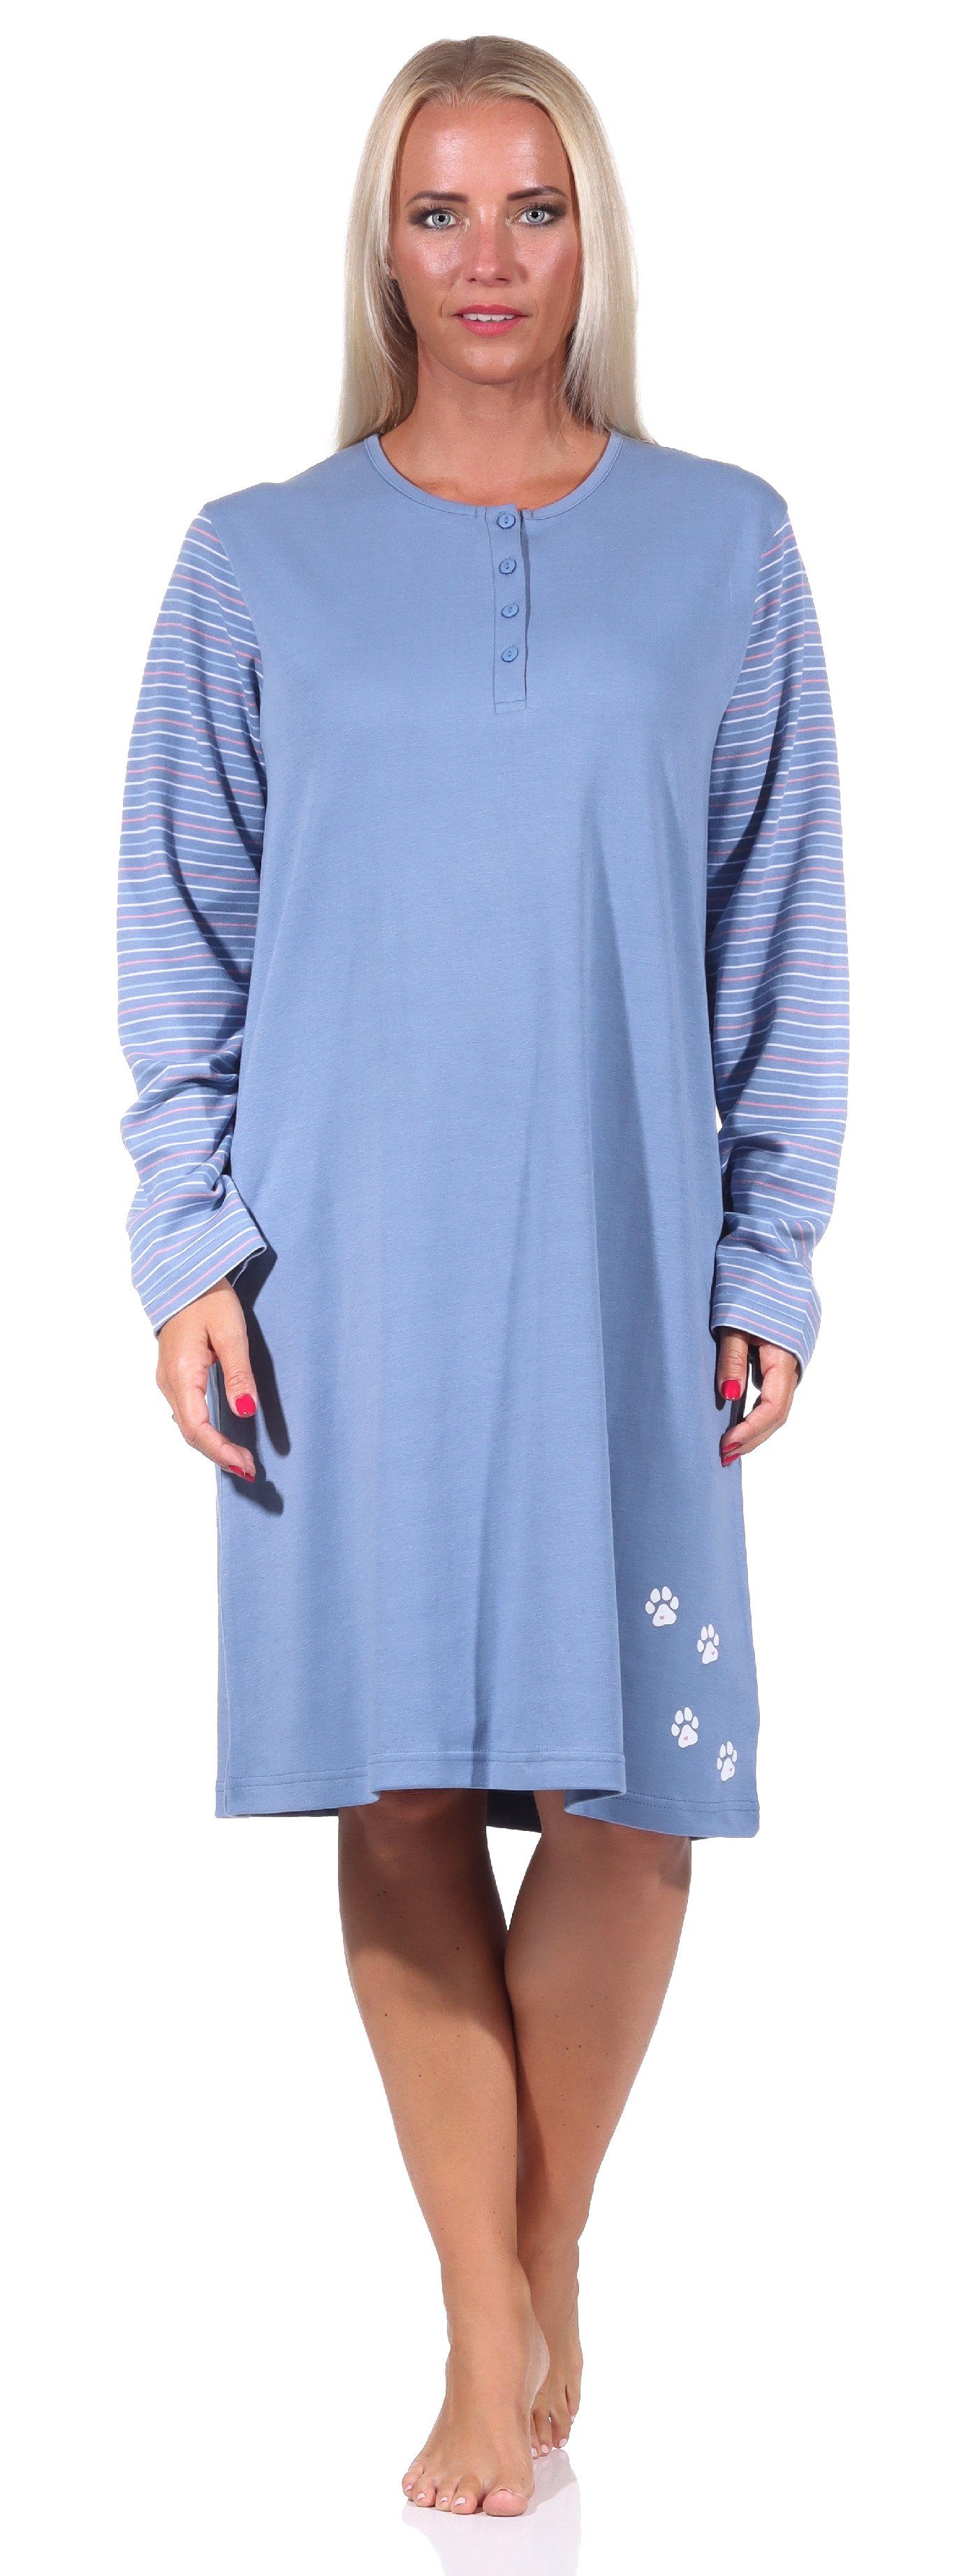 Normann Nachthemd Damen Nachthemd langarm in Kuschel Interlock Qualität blau